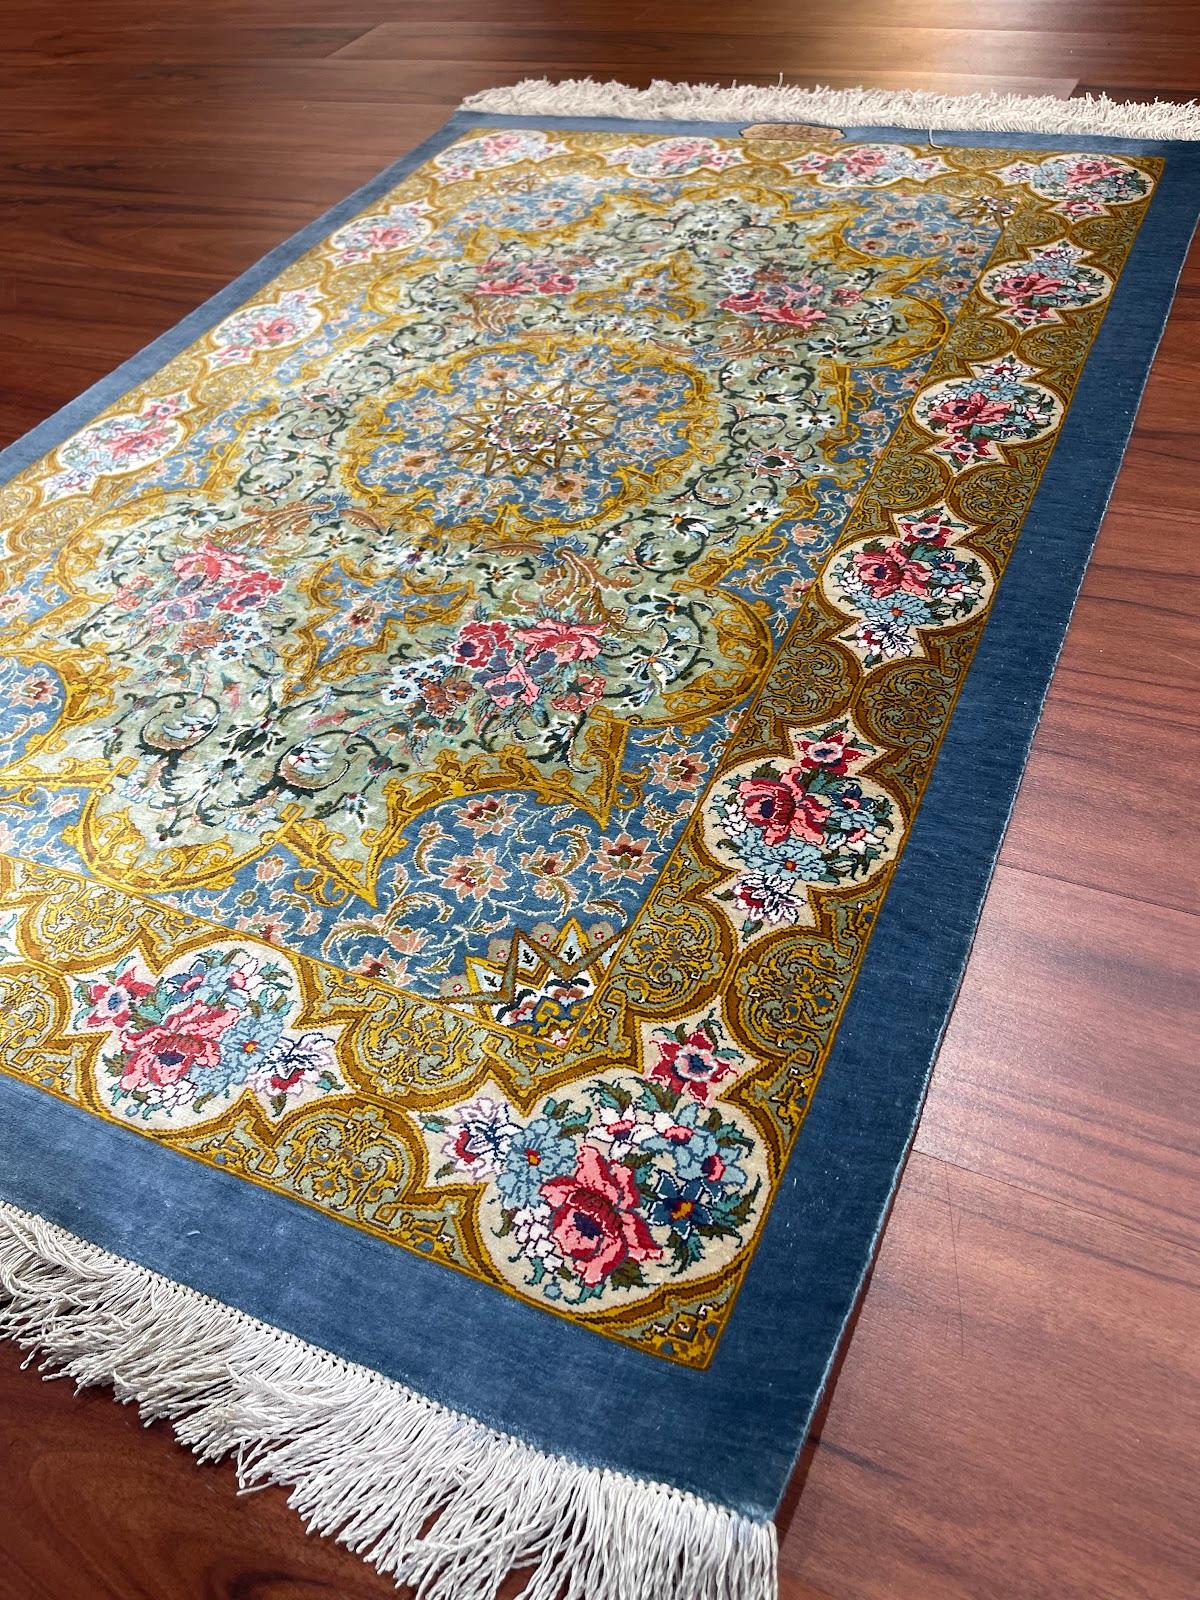 Il s'agit d'un tapis Qum en soie persane originaire d'Iran. La matière est 100 % soie. Les dimensions sont de 2'7 